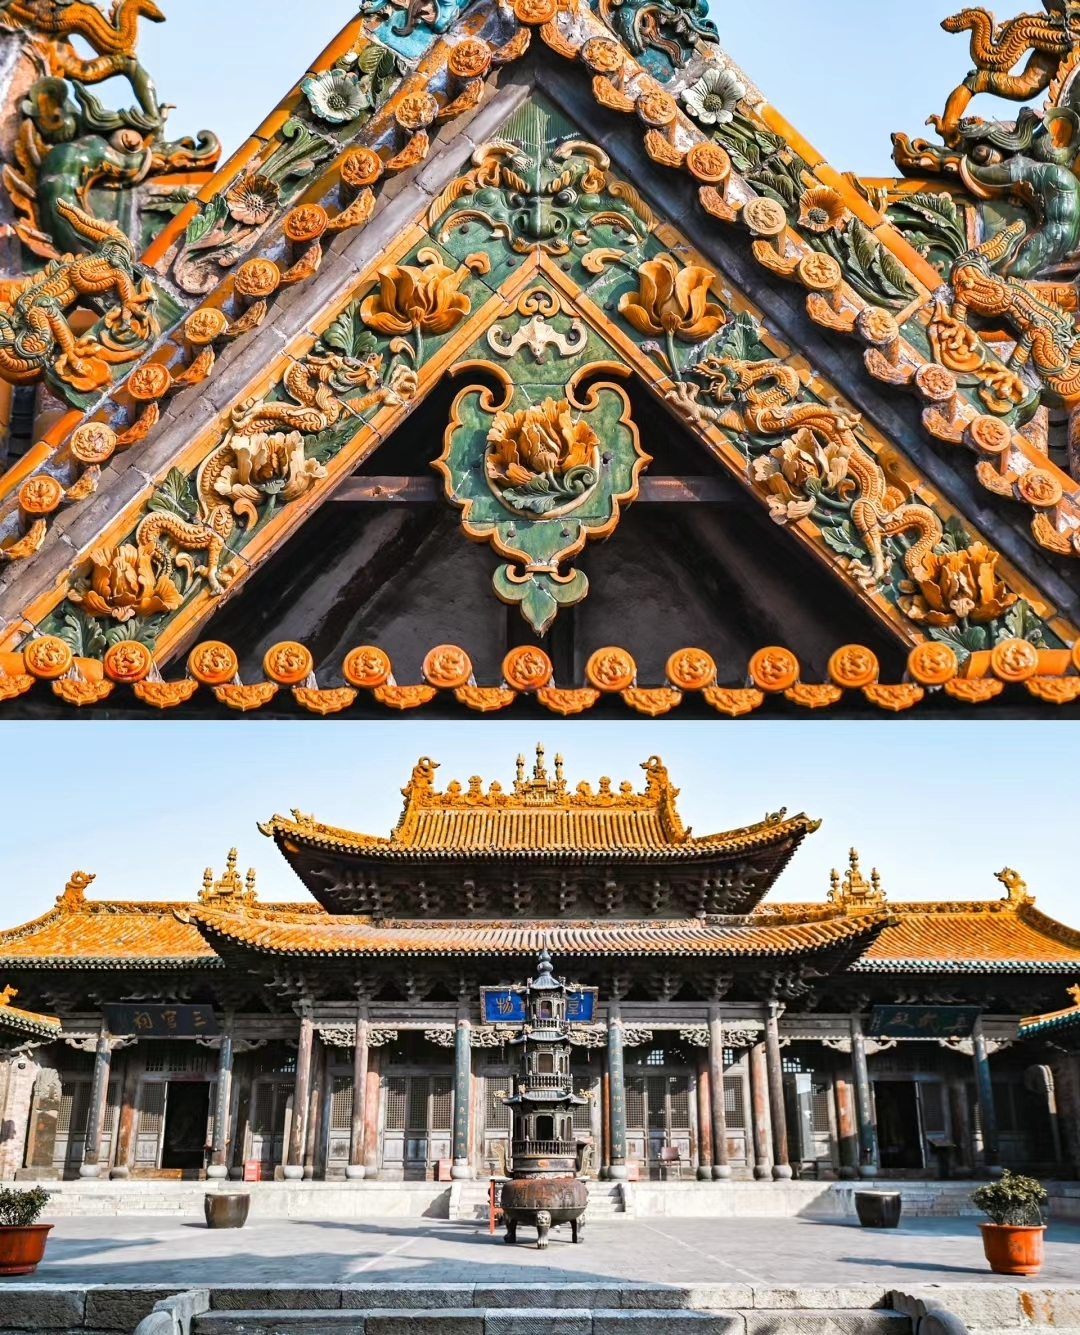 中国“琉璃之乡”的500年琉璃艺术建筑博物馆